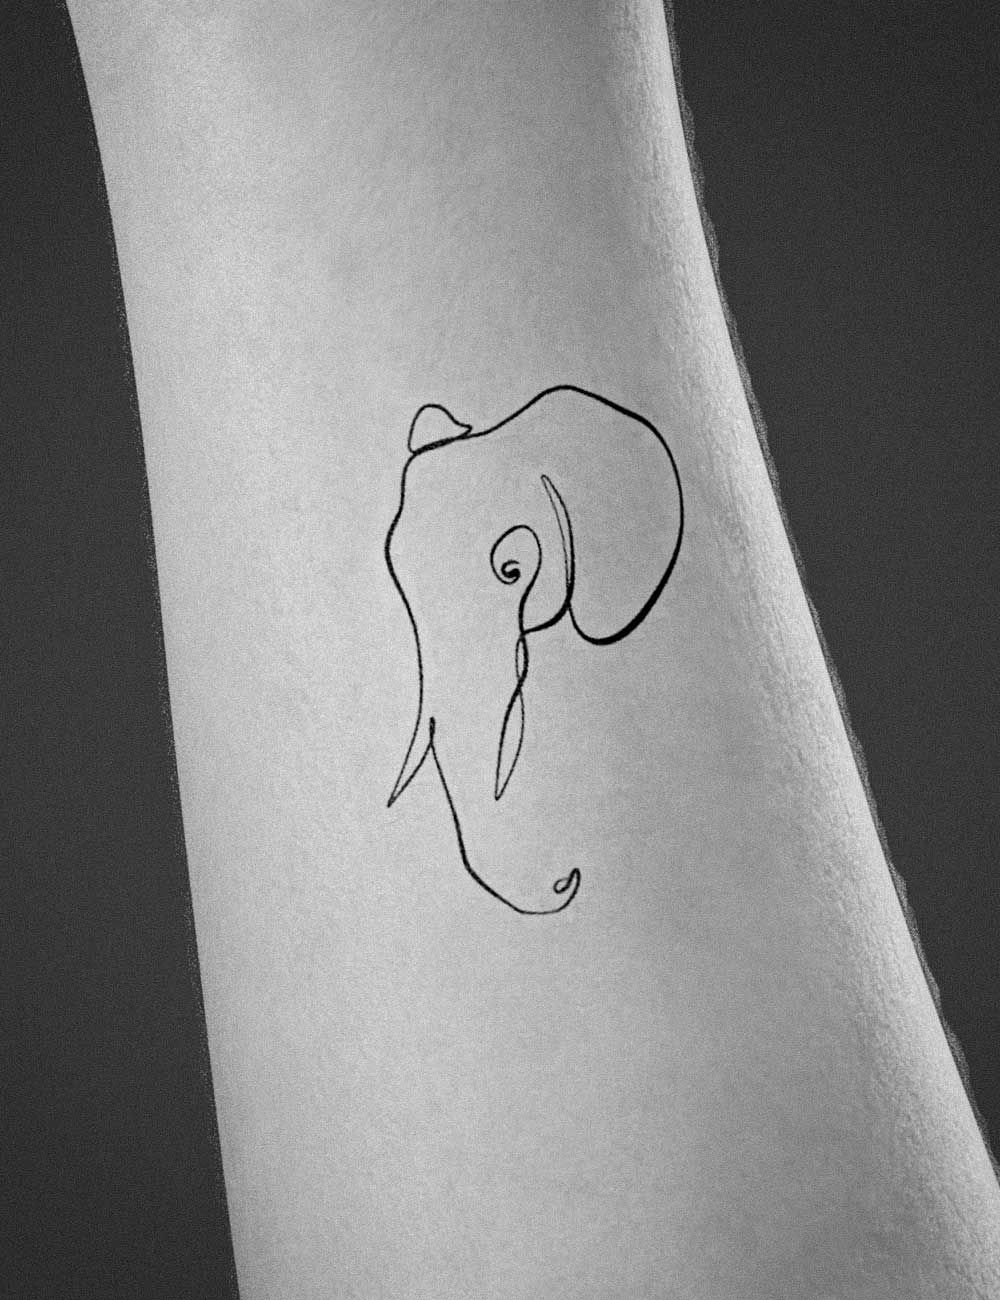 36 Minimalist tattoos ideas you must see  Minimalist tattoo Elephant  tattoo small Elephant tattoo design